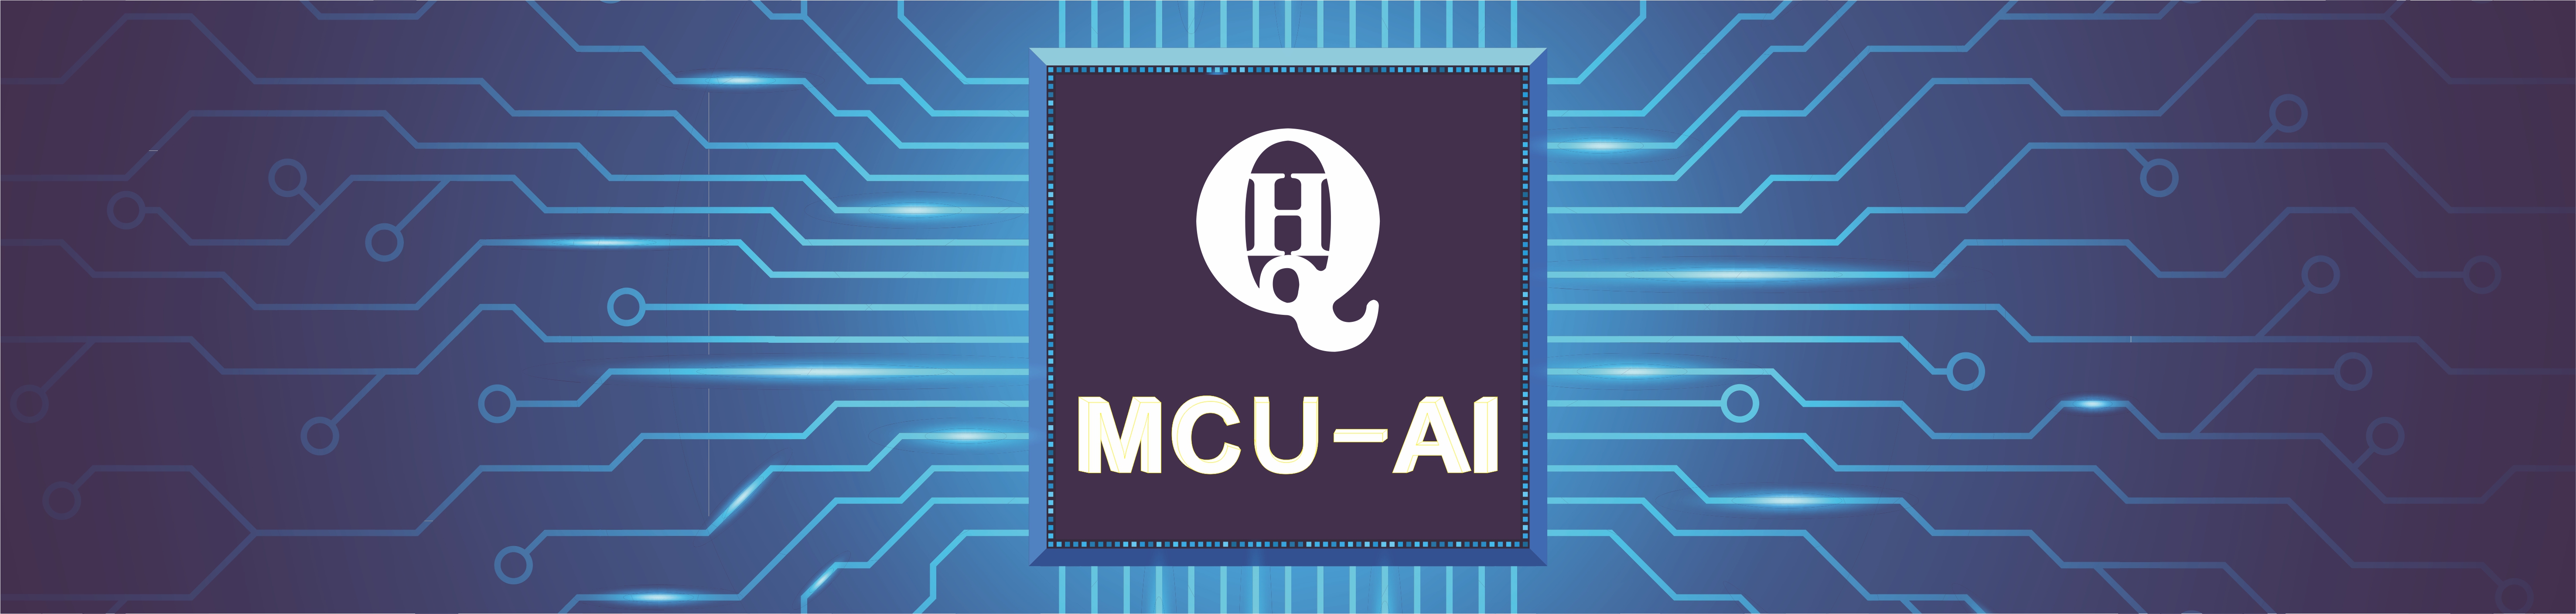 MCU-AI人工智能